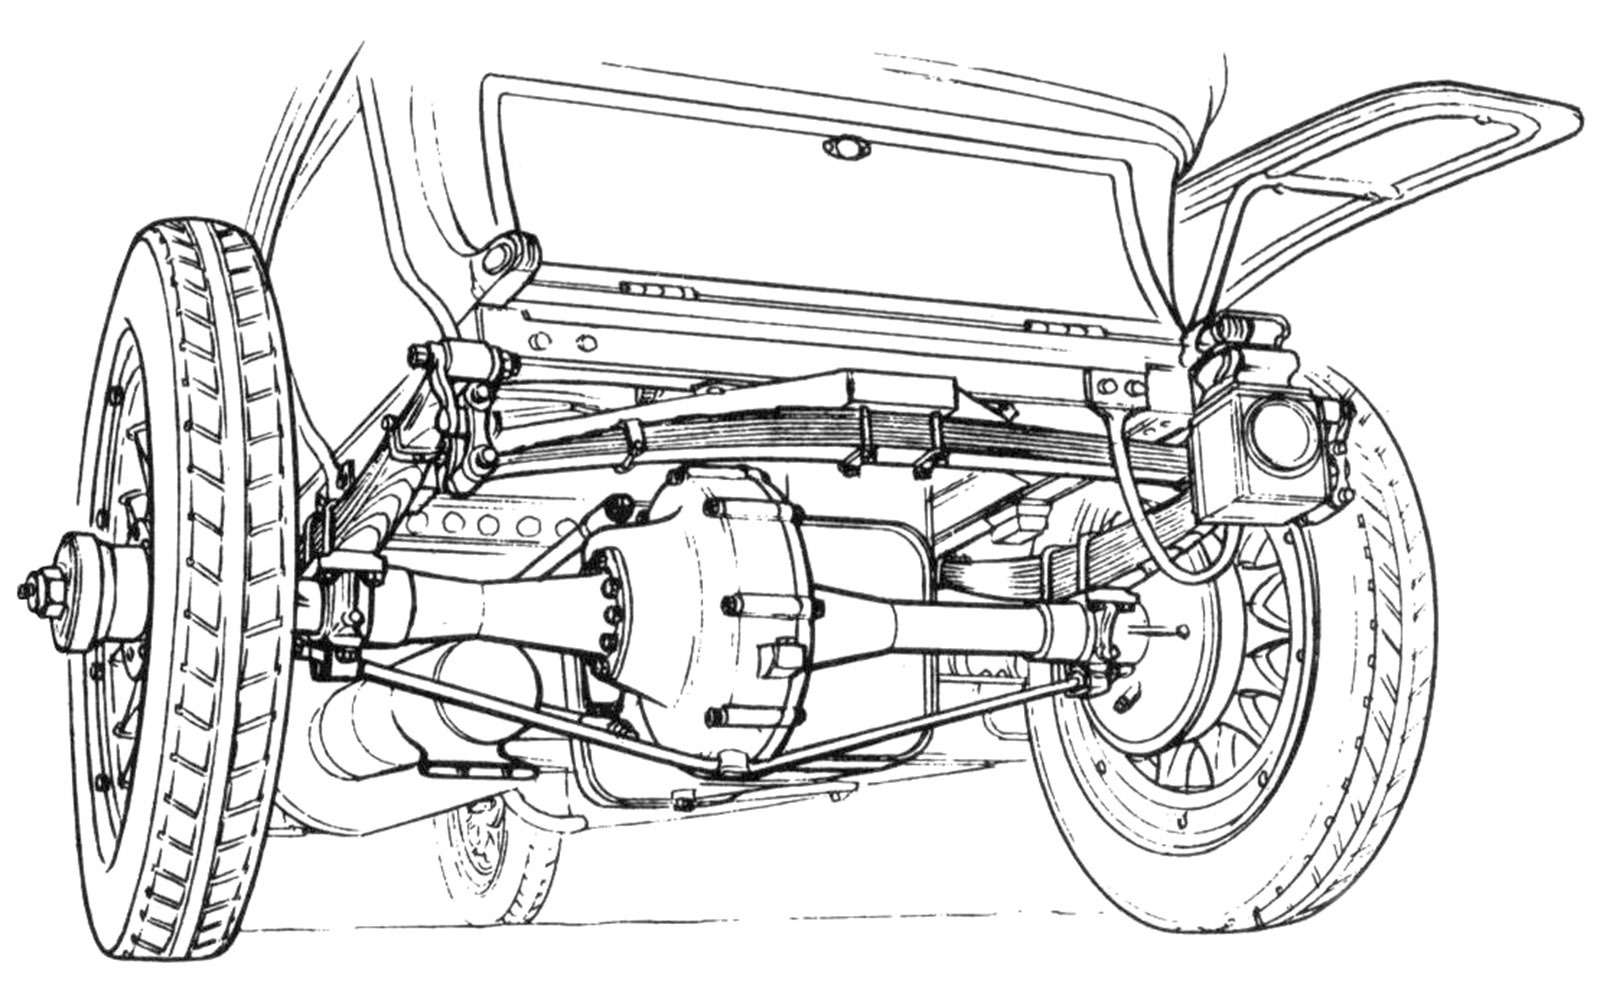 Задняя подвеска автомобиля Rolls-Royce Silver Ghost, 1906 год. Для улучшения плавности хода помимо длинных продольных рессор поставили дополни­тельную поперечную.